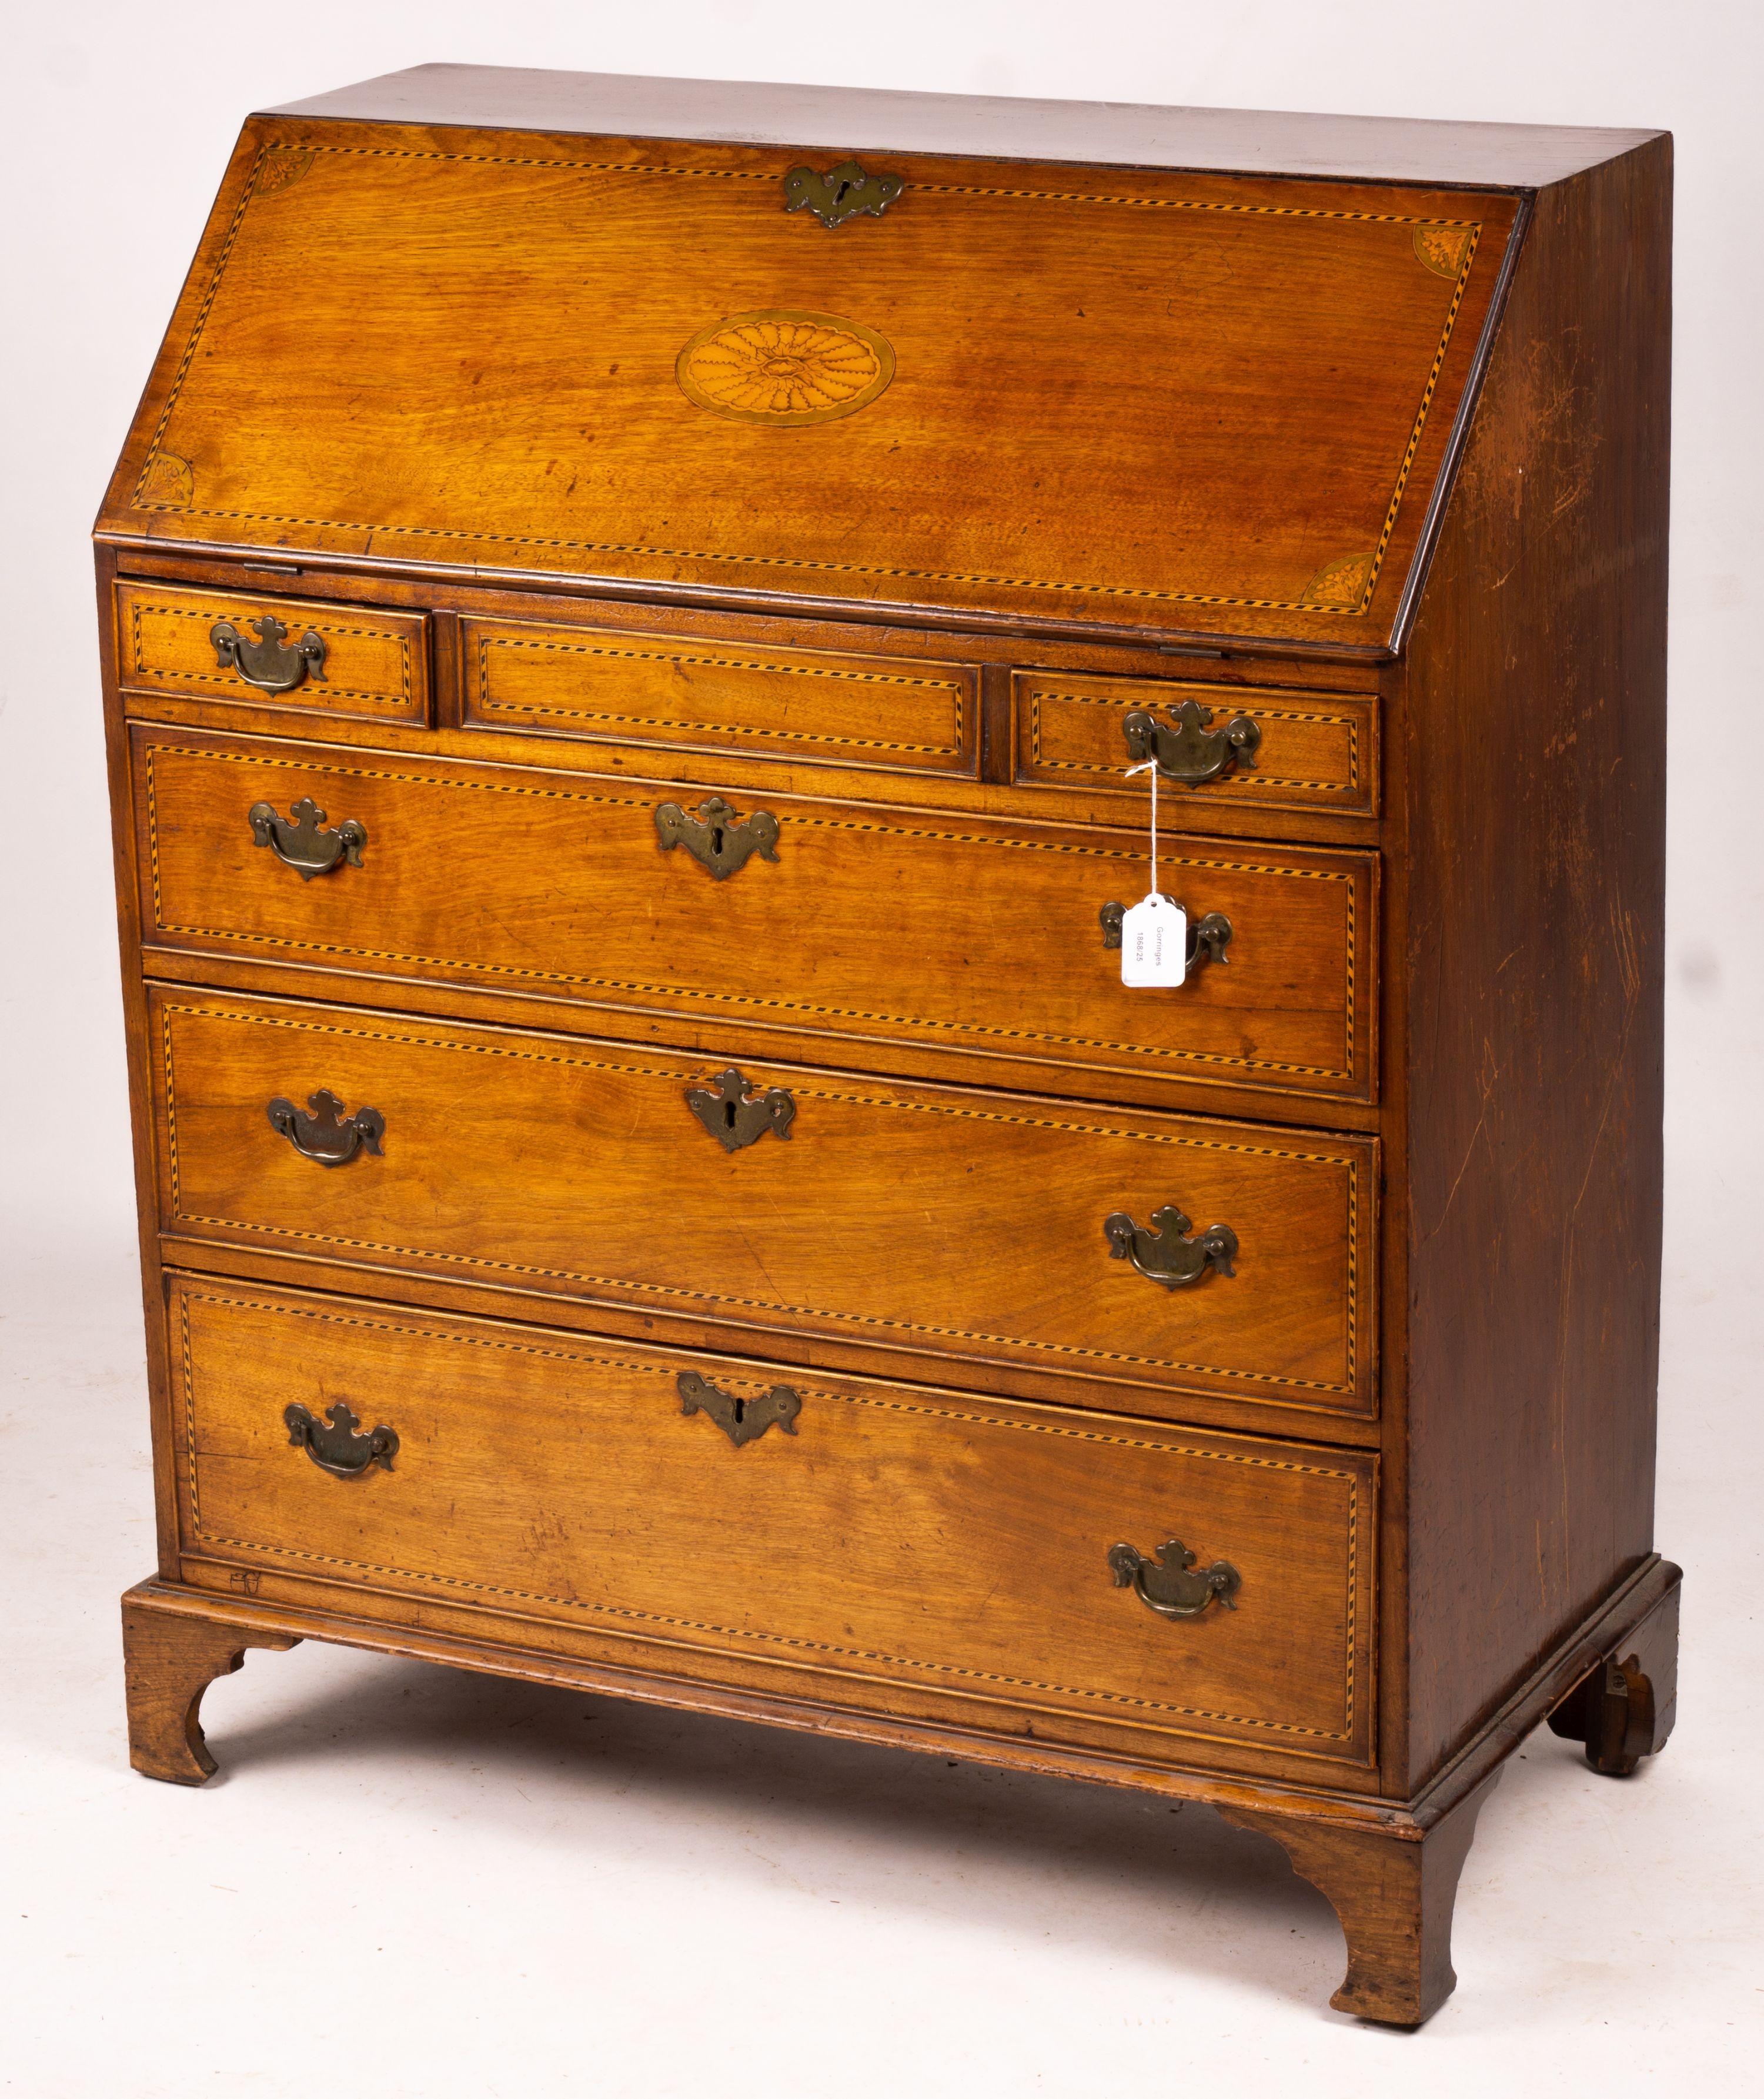 A George III inlaid mahogany bureau, width 88cm, depth 45cm, height 108cm